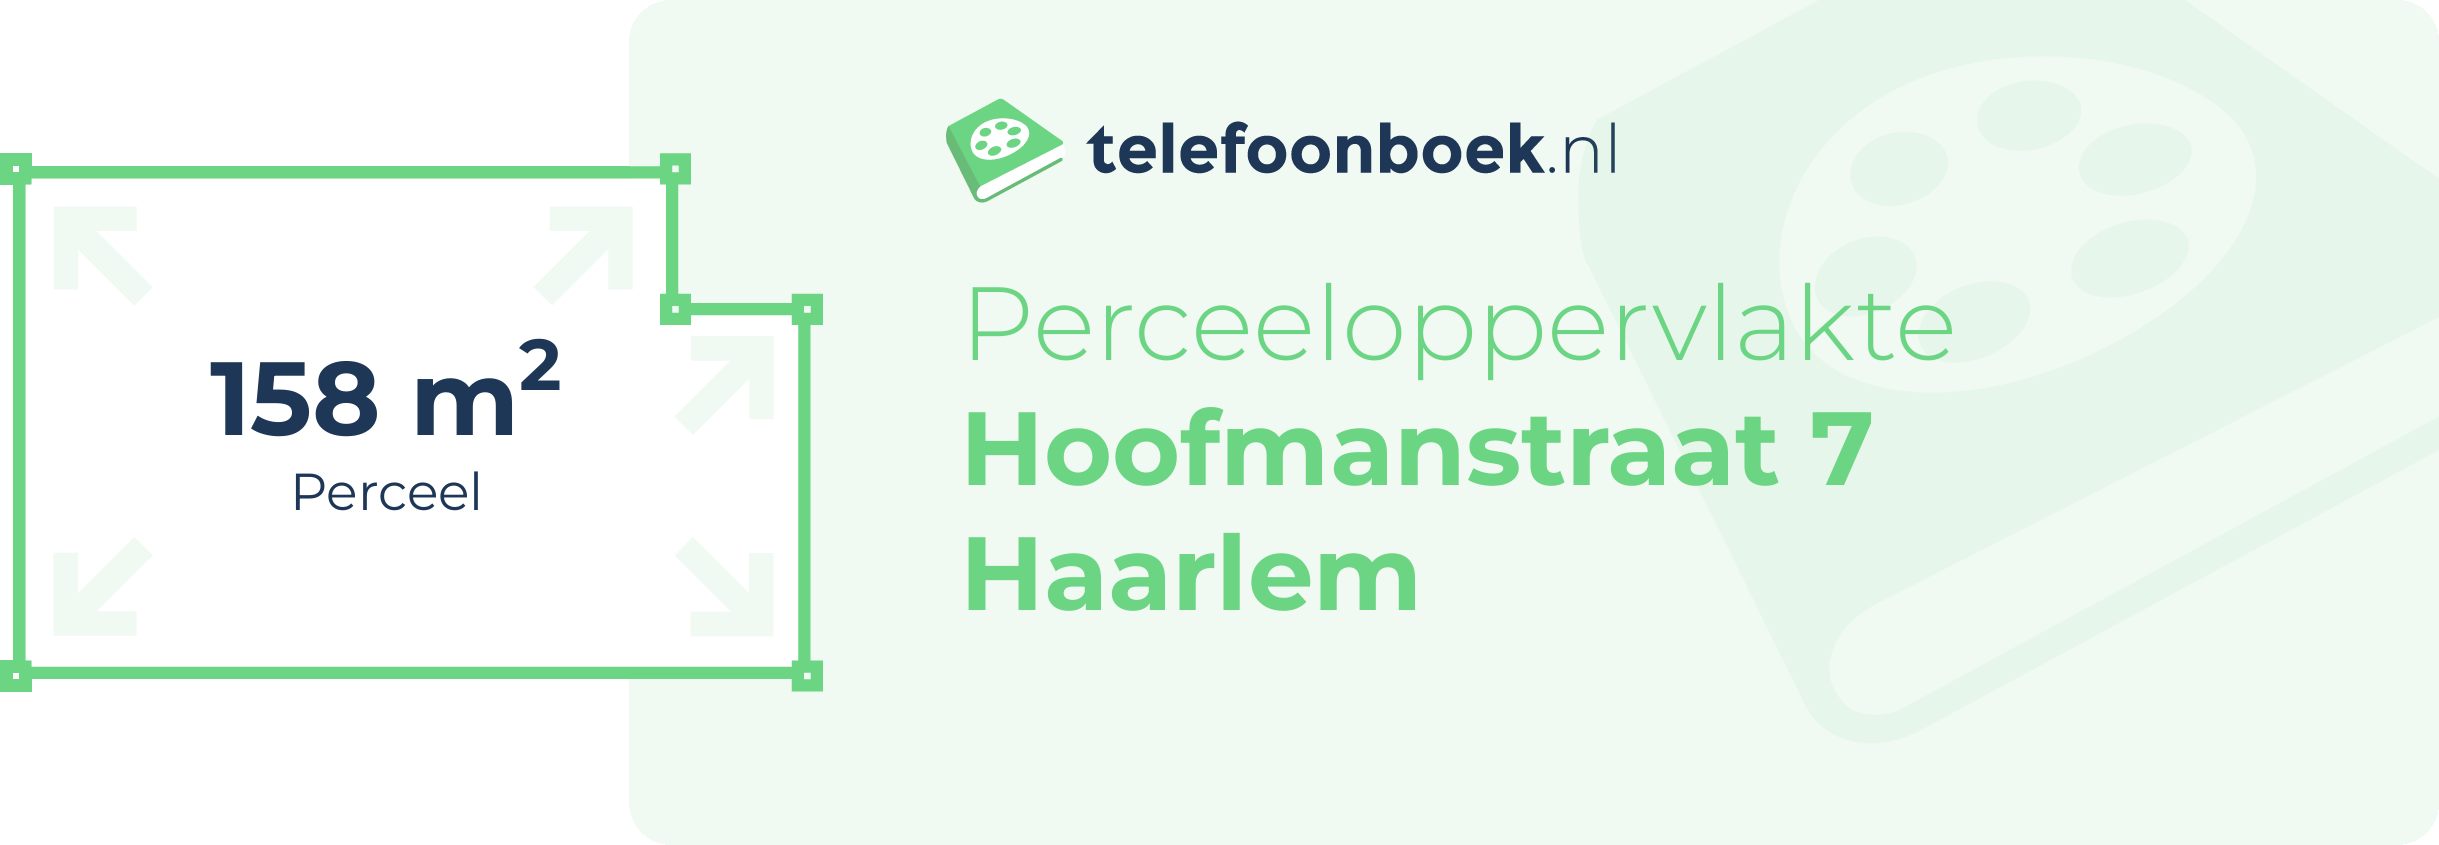 Perceeloppervlakte Hoofmanstraat 7 Haarlem